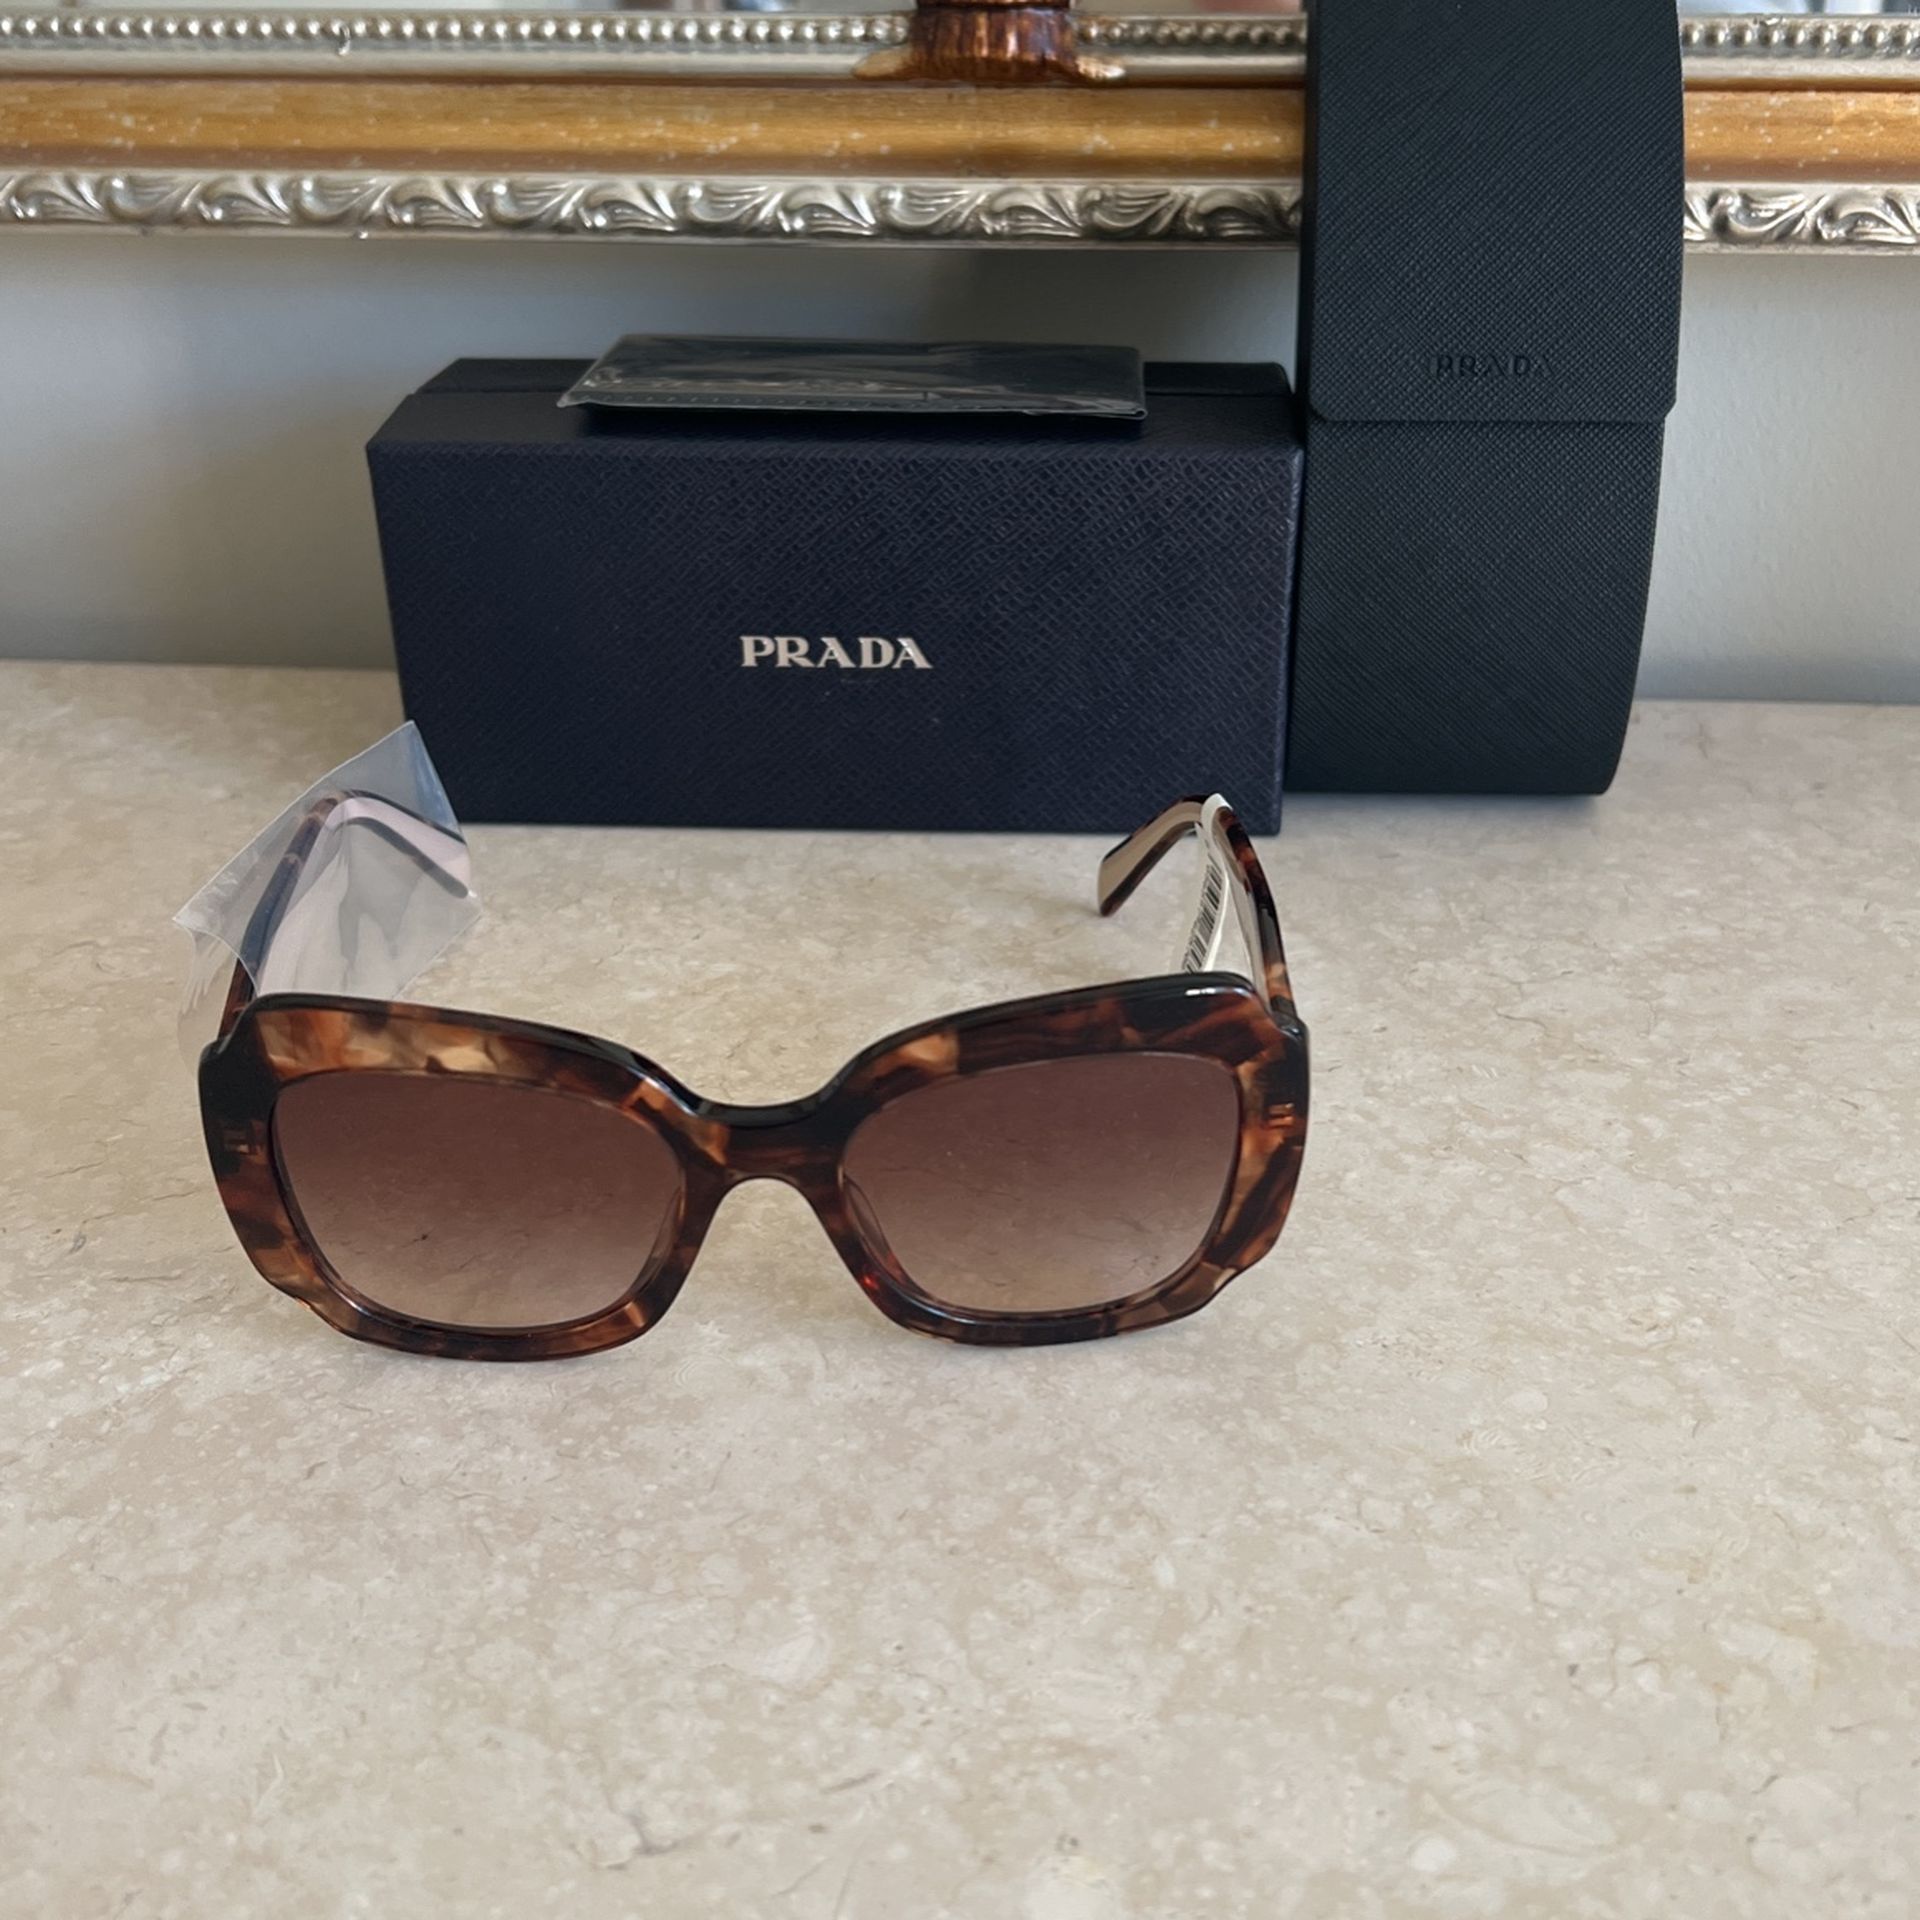 New!! Authentic Prada Sunglasses 